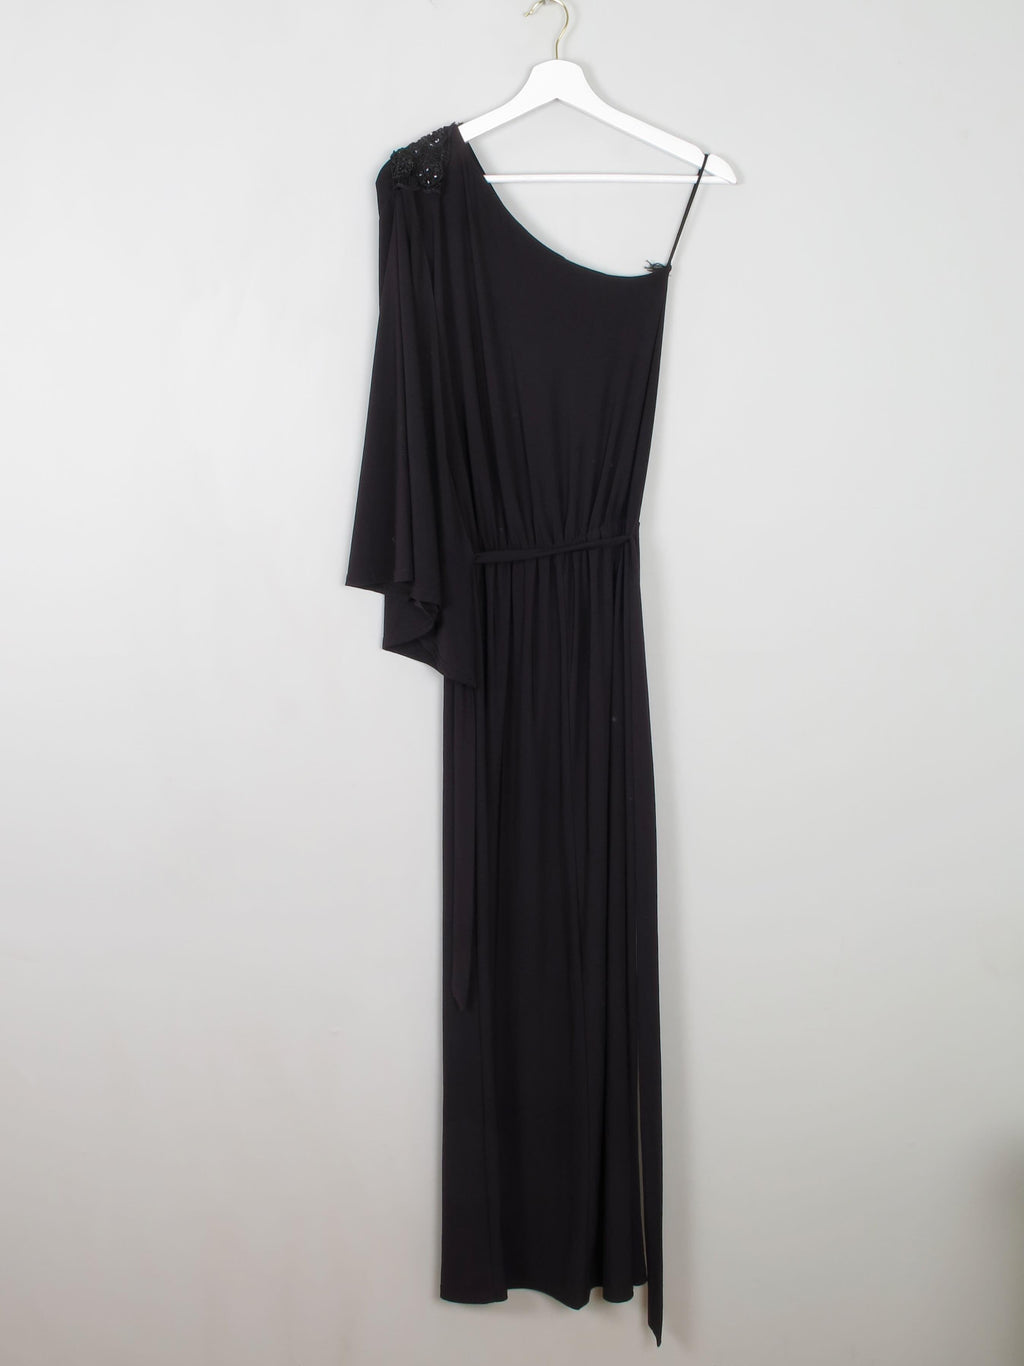 Black Vintage Style One Shoulder Full Length Dress S/M - The Harlequin